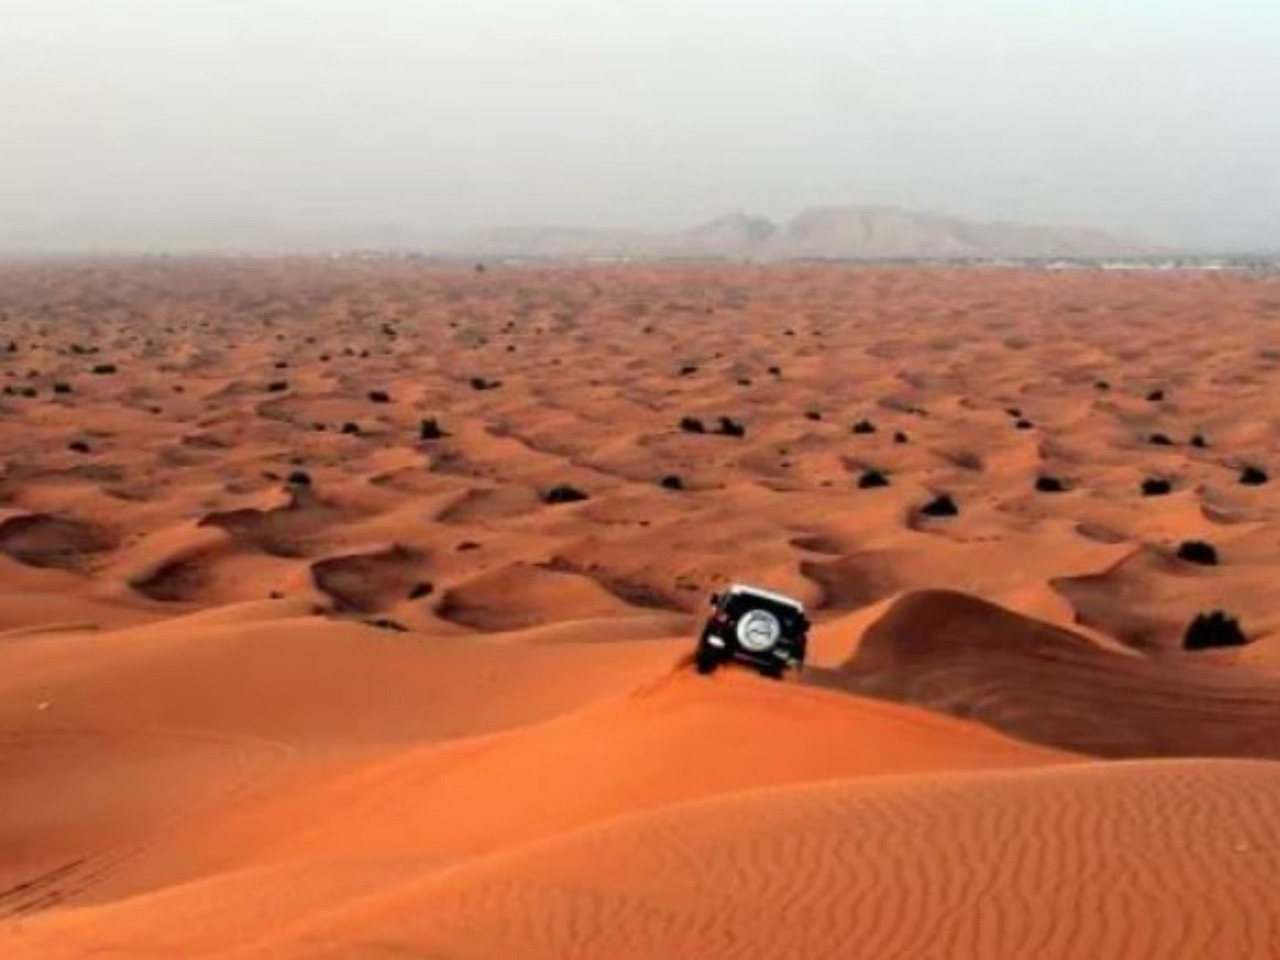 Сафари в красных песках | Цена 430$, отзывы, описание экскурсии